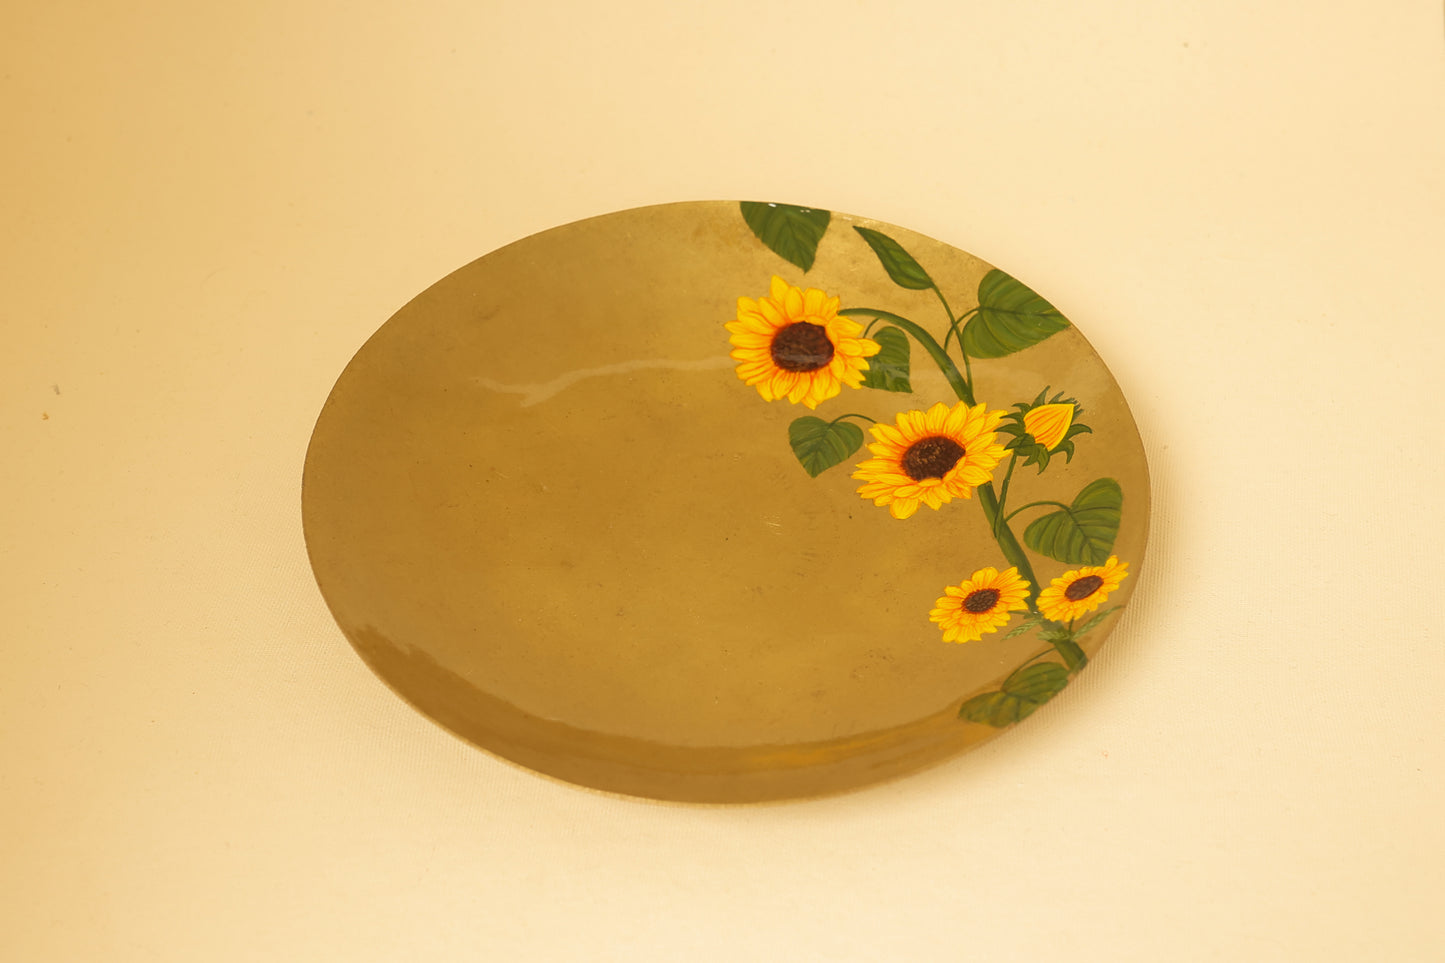 Sunflower Small Plate